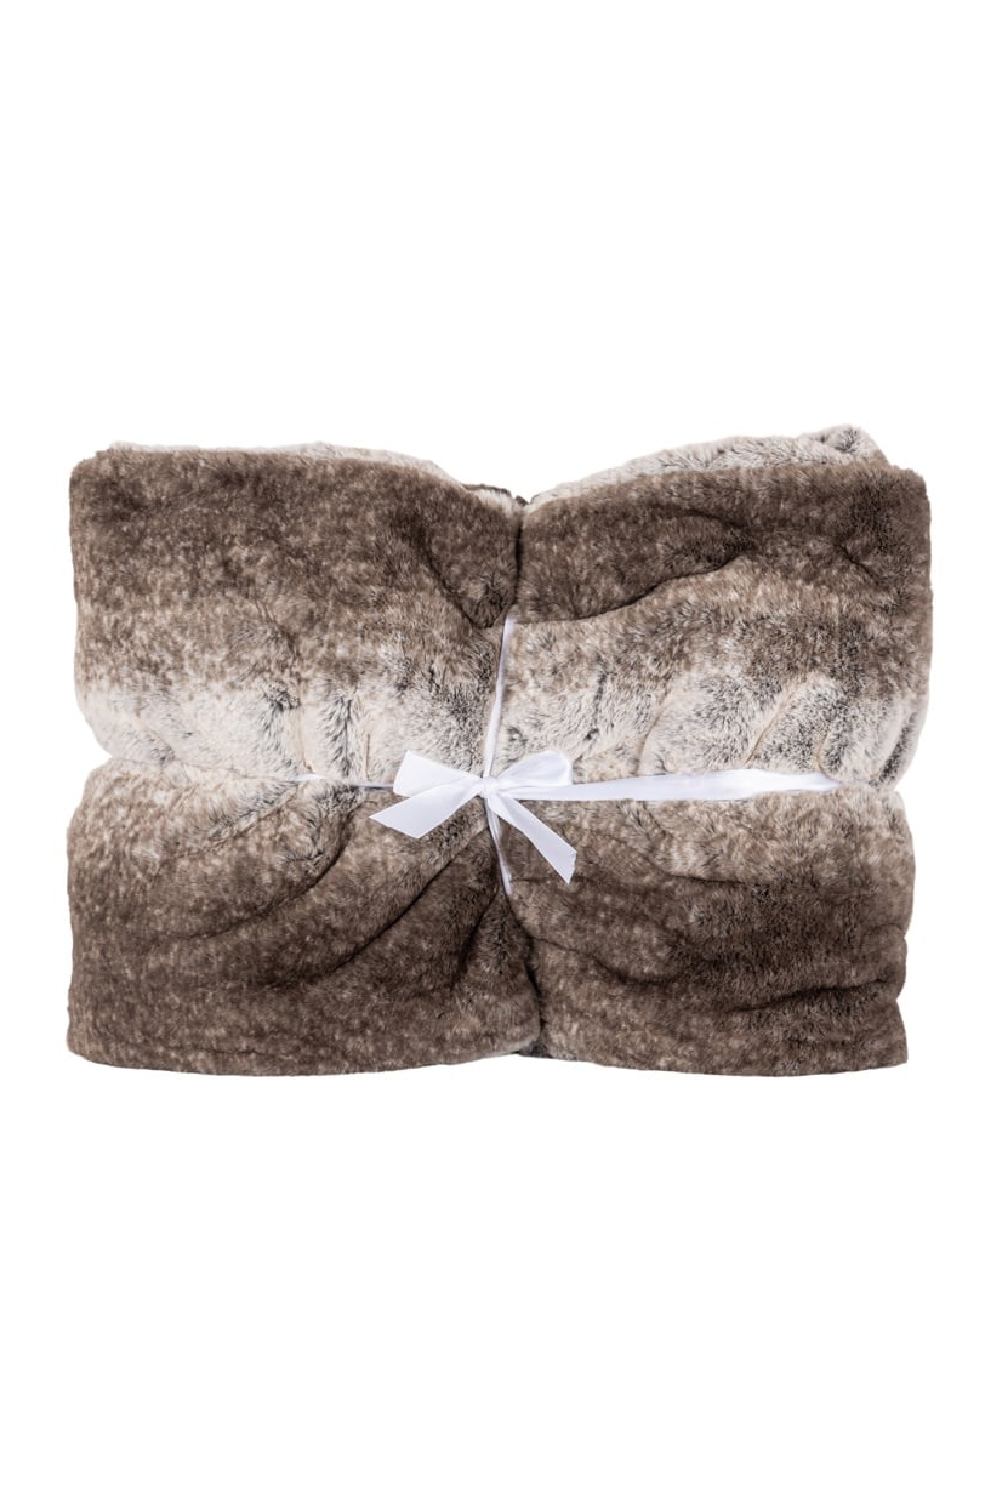 Brown Furry Blanket | OROA Nanoek | Oroa.com